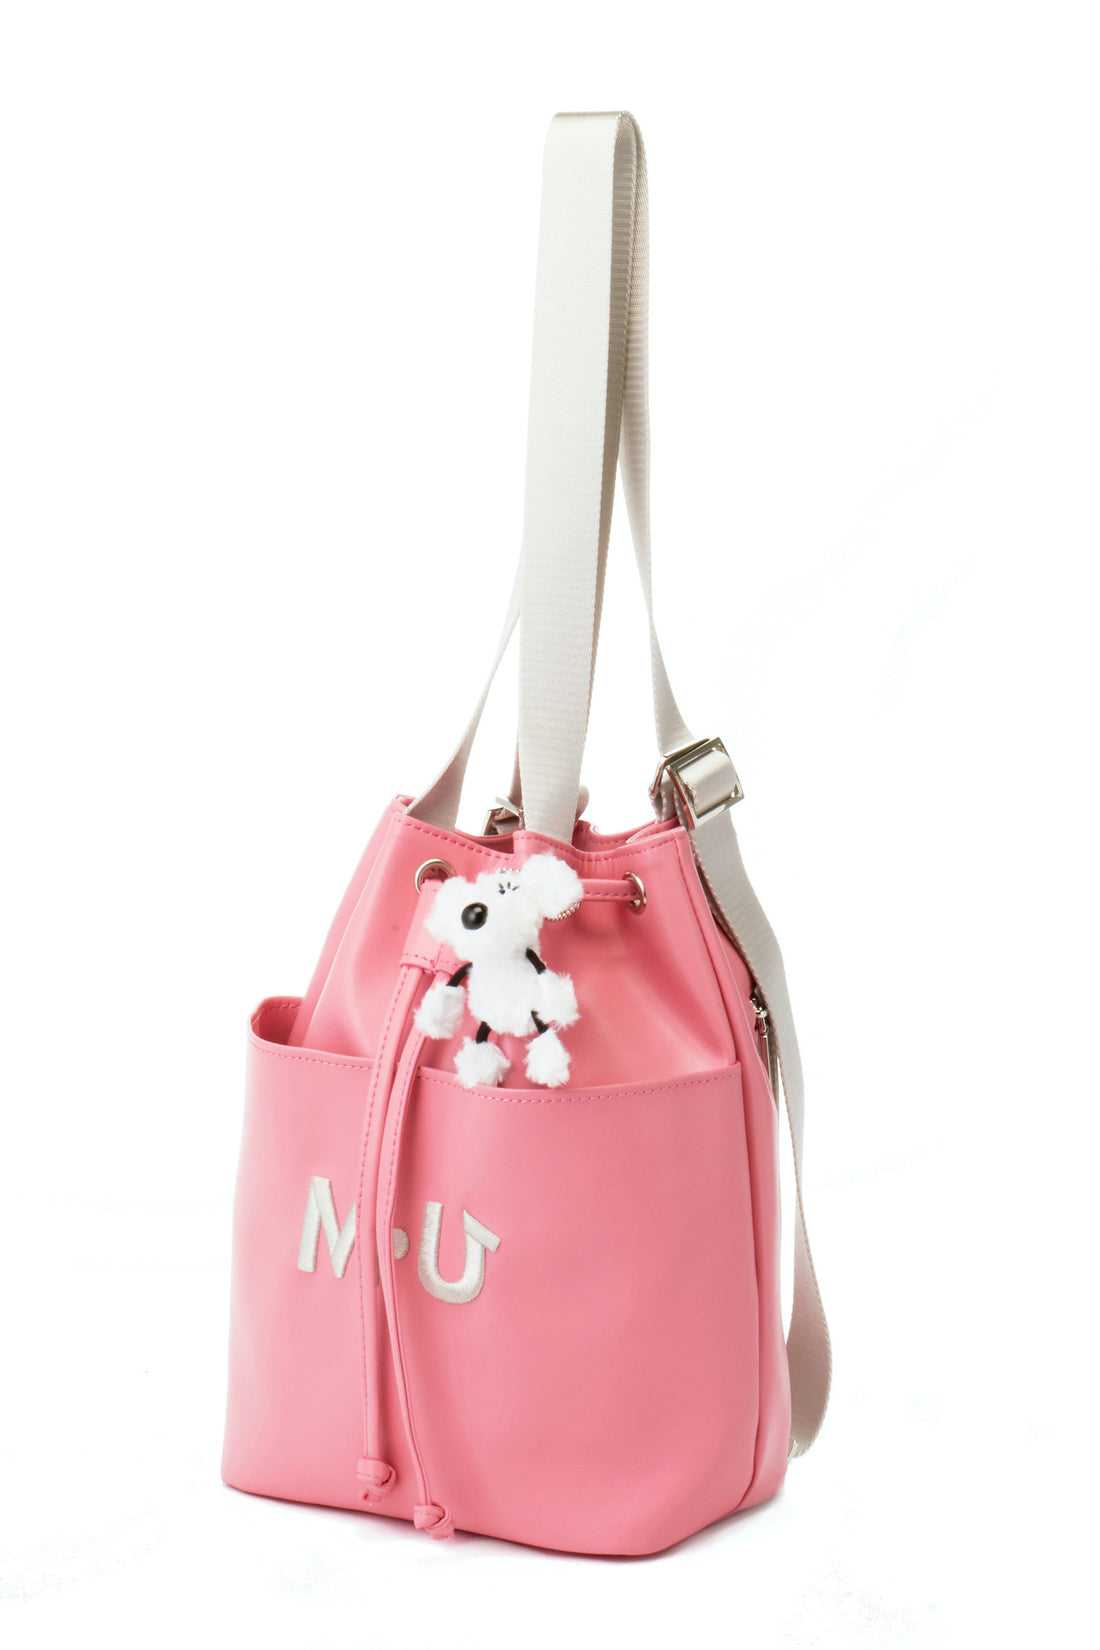 SHUSHU mini backpack with charm (703J1026)